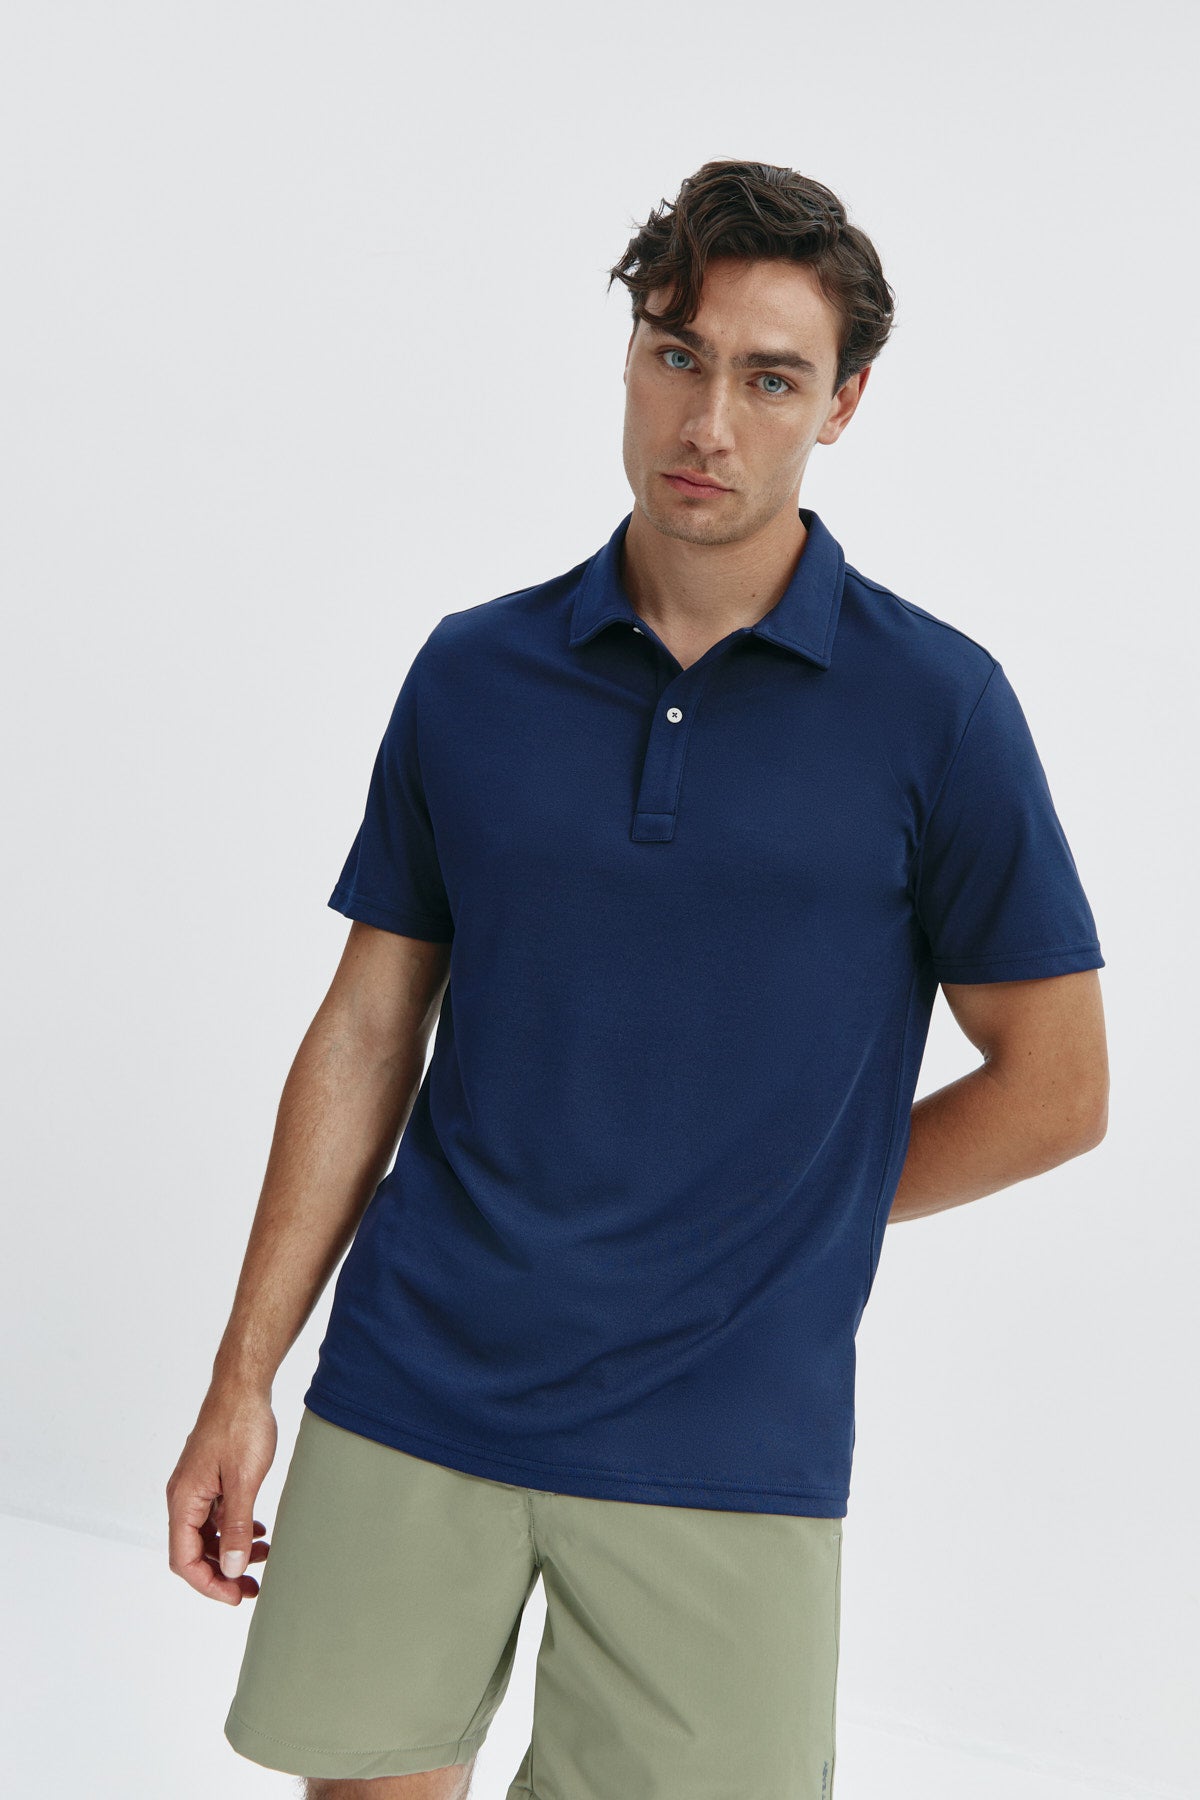 Polo manga corta para hombre en azul marino de Sepiia, versatilidad y elegancia en una prenda clásica. Foto de frente.